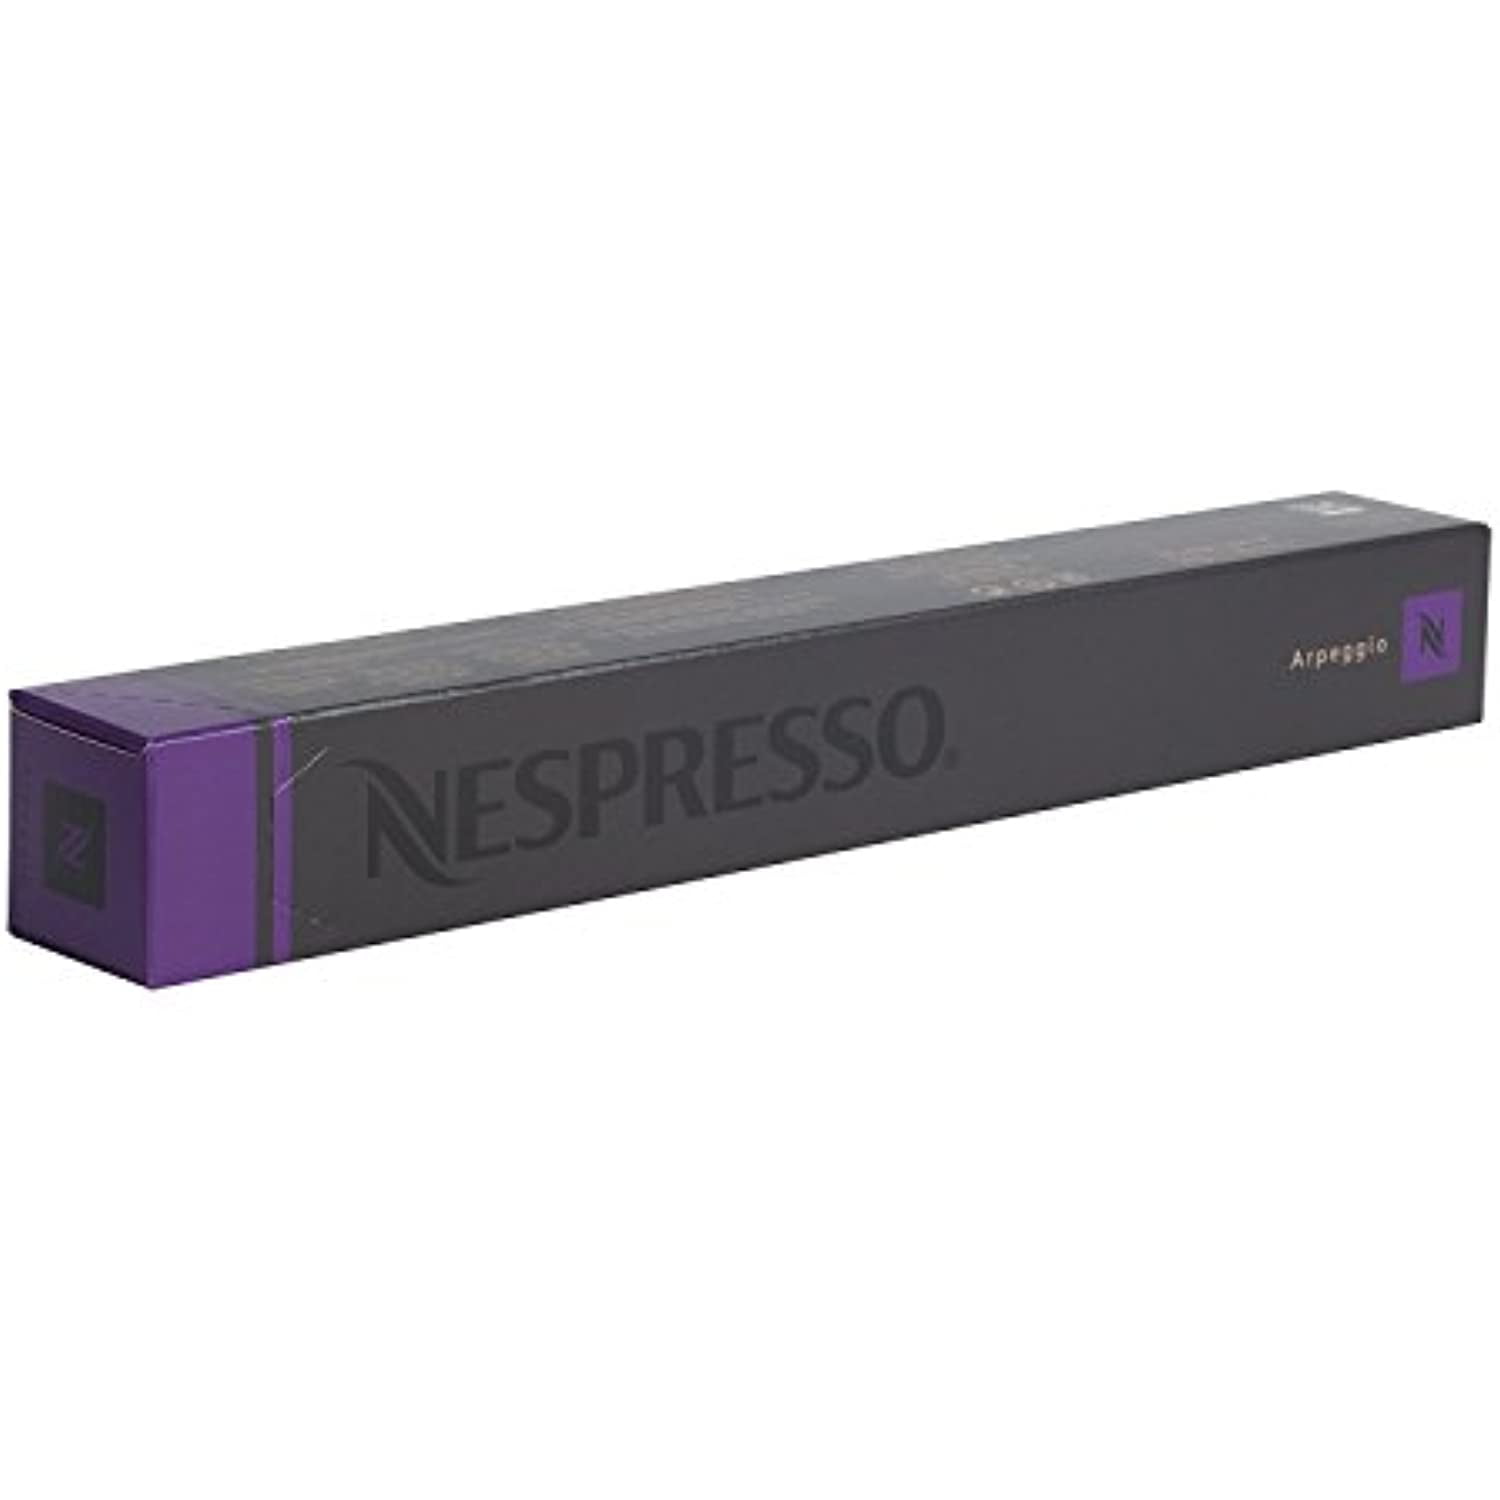 Nespresso Original Capsules Coffee Pods 10 Capsules Arpeggio